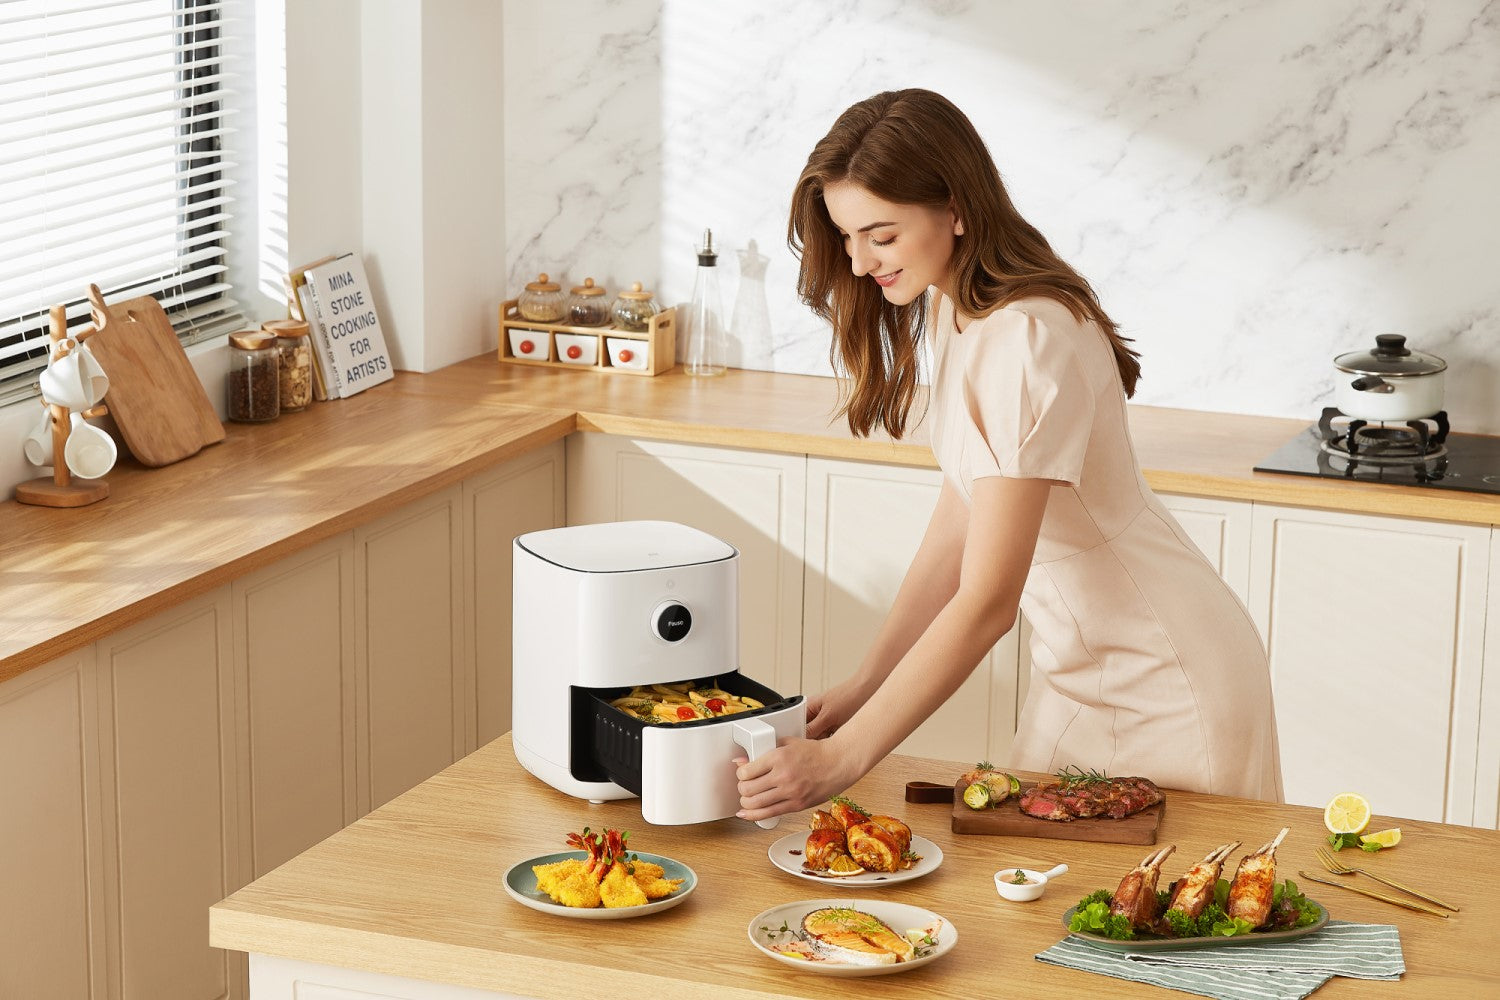 Mi Smart Air Fryer 3.5L EU: La revolución en la cocina saludable